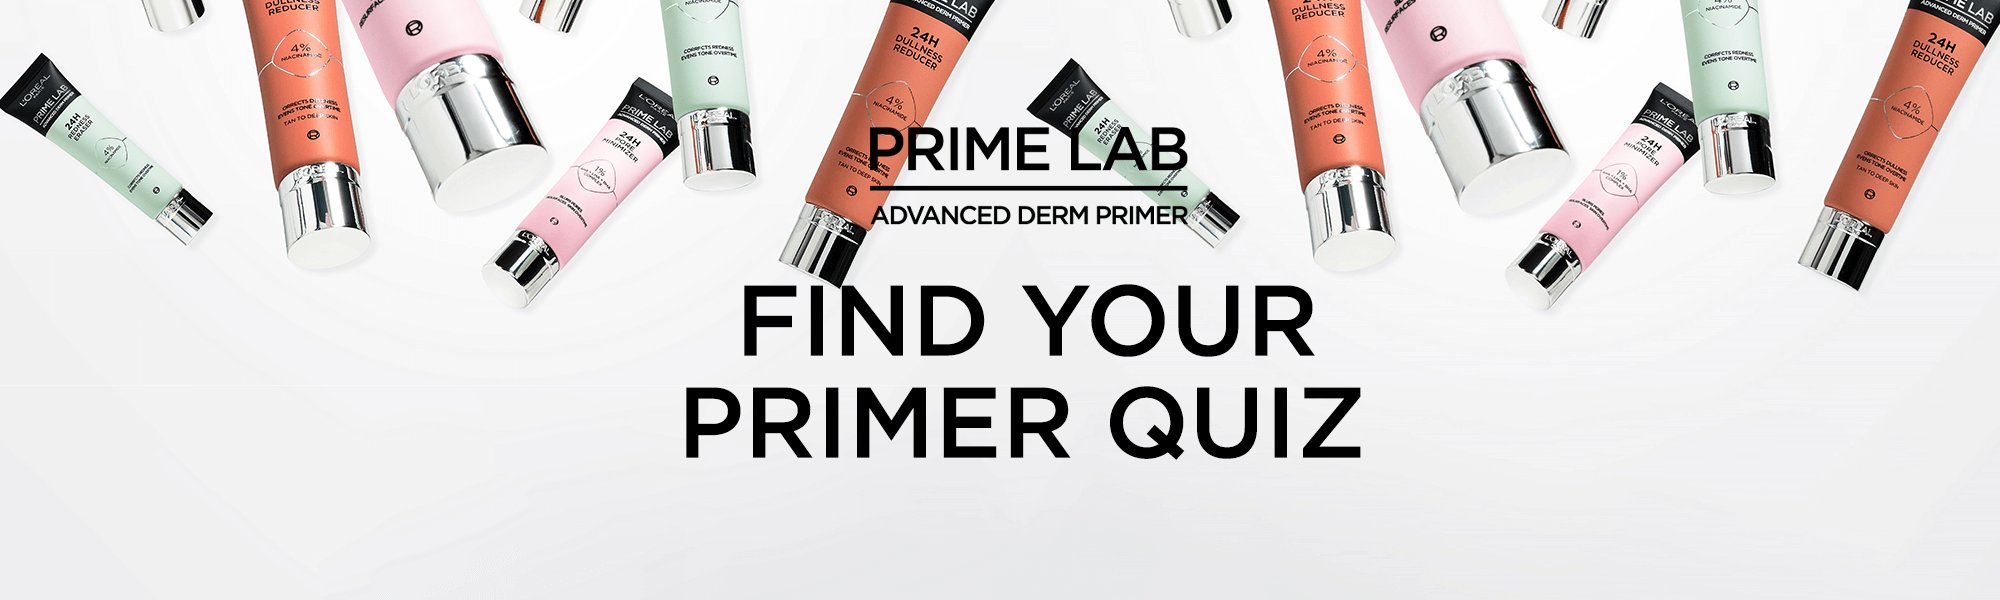 Prime Lab Quizz Banner V4